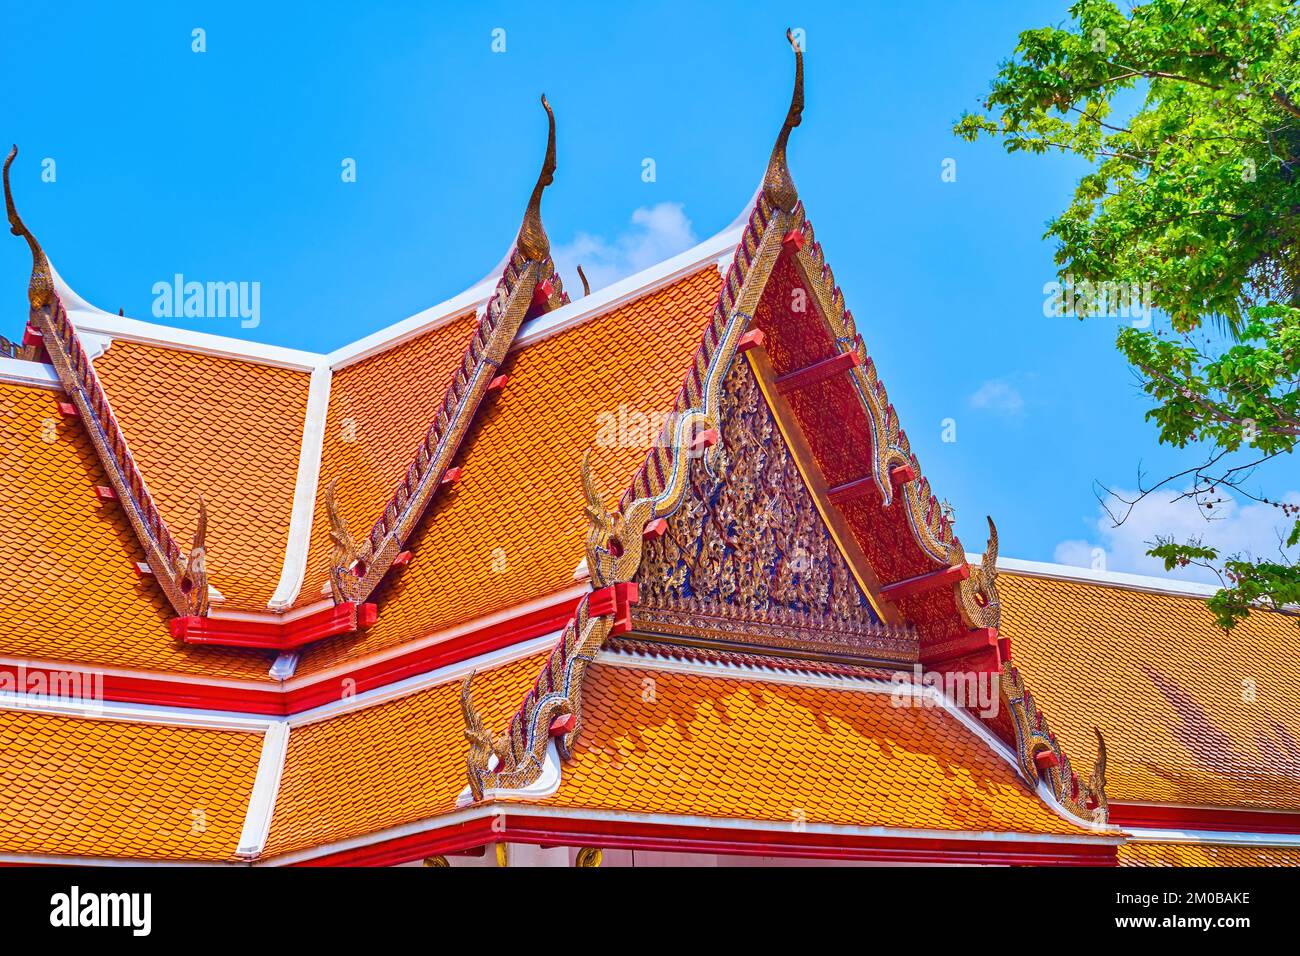 Das traditionelle thailändische Dach der Schreine des Wat Mahathat Tempels mit farbenfrohem Pediment, Bangkok, Thailand Stockfoto